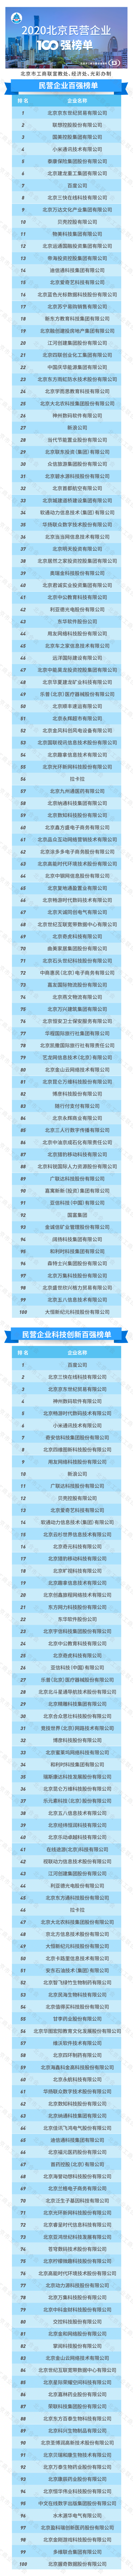 工商联发布2020北京民营企业百强榜单  京东、联想、国美位列前三